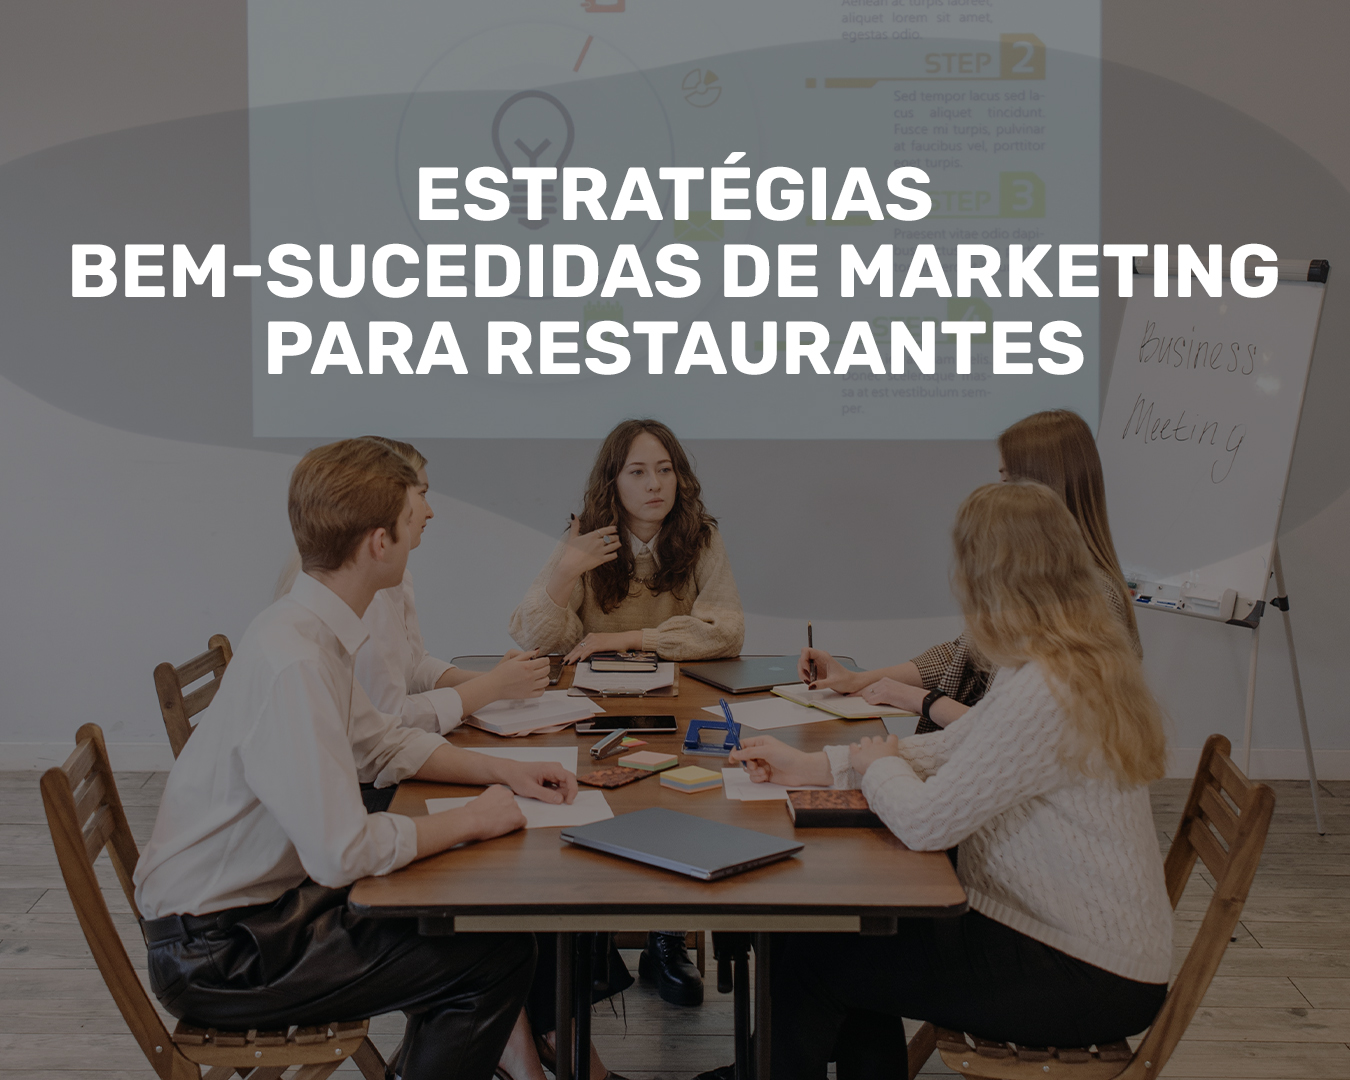 Estratégias bem-sucedidas de marketing para restaurantes